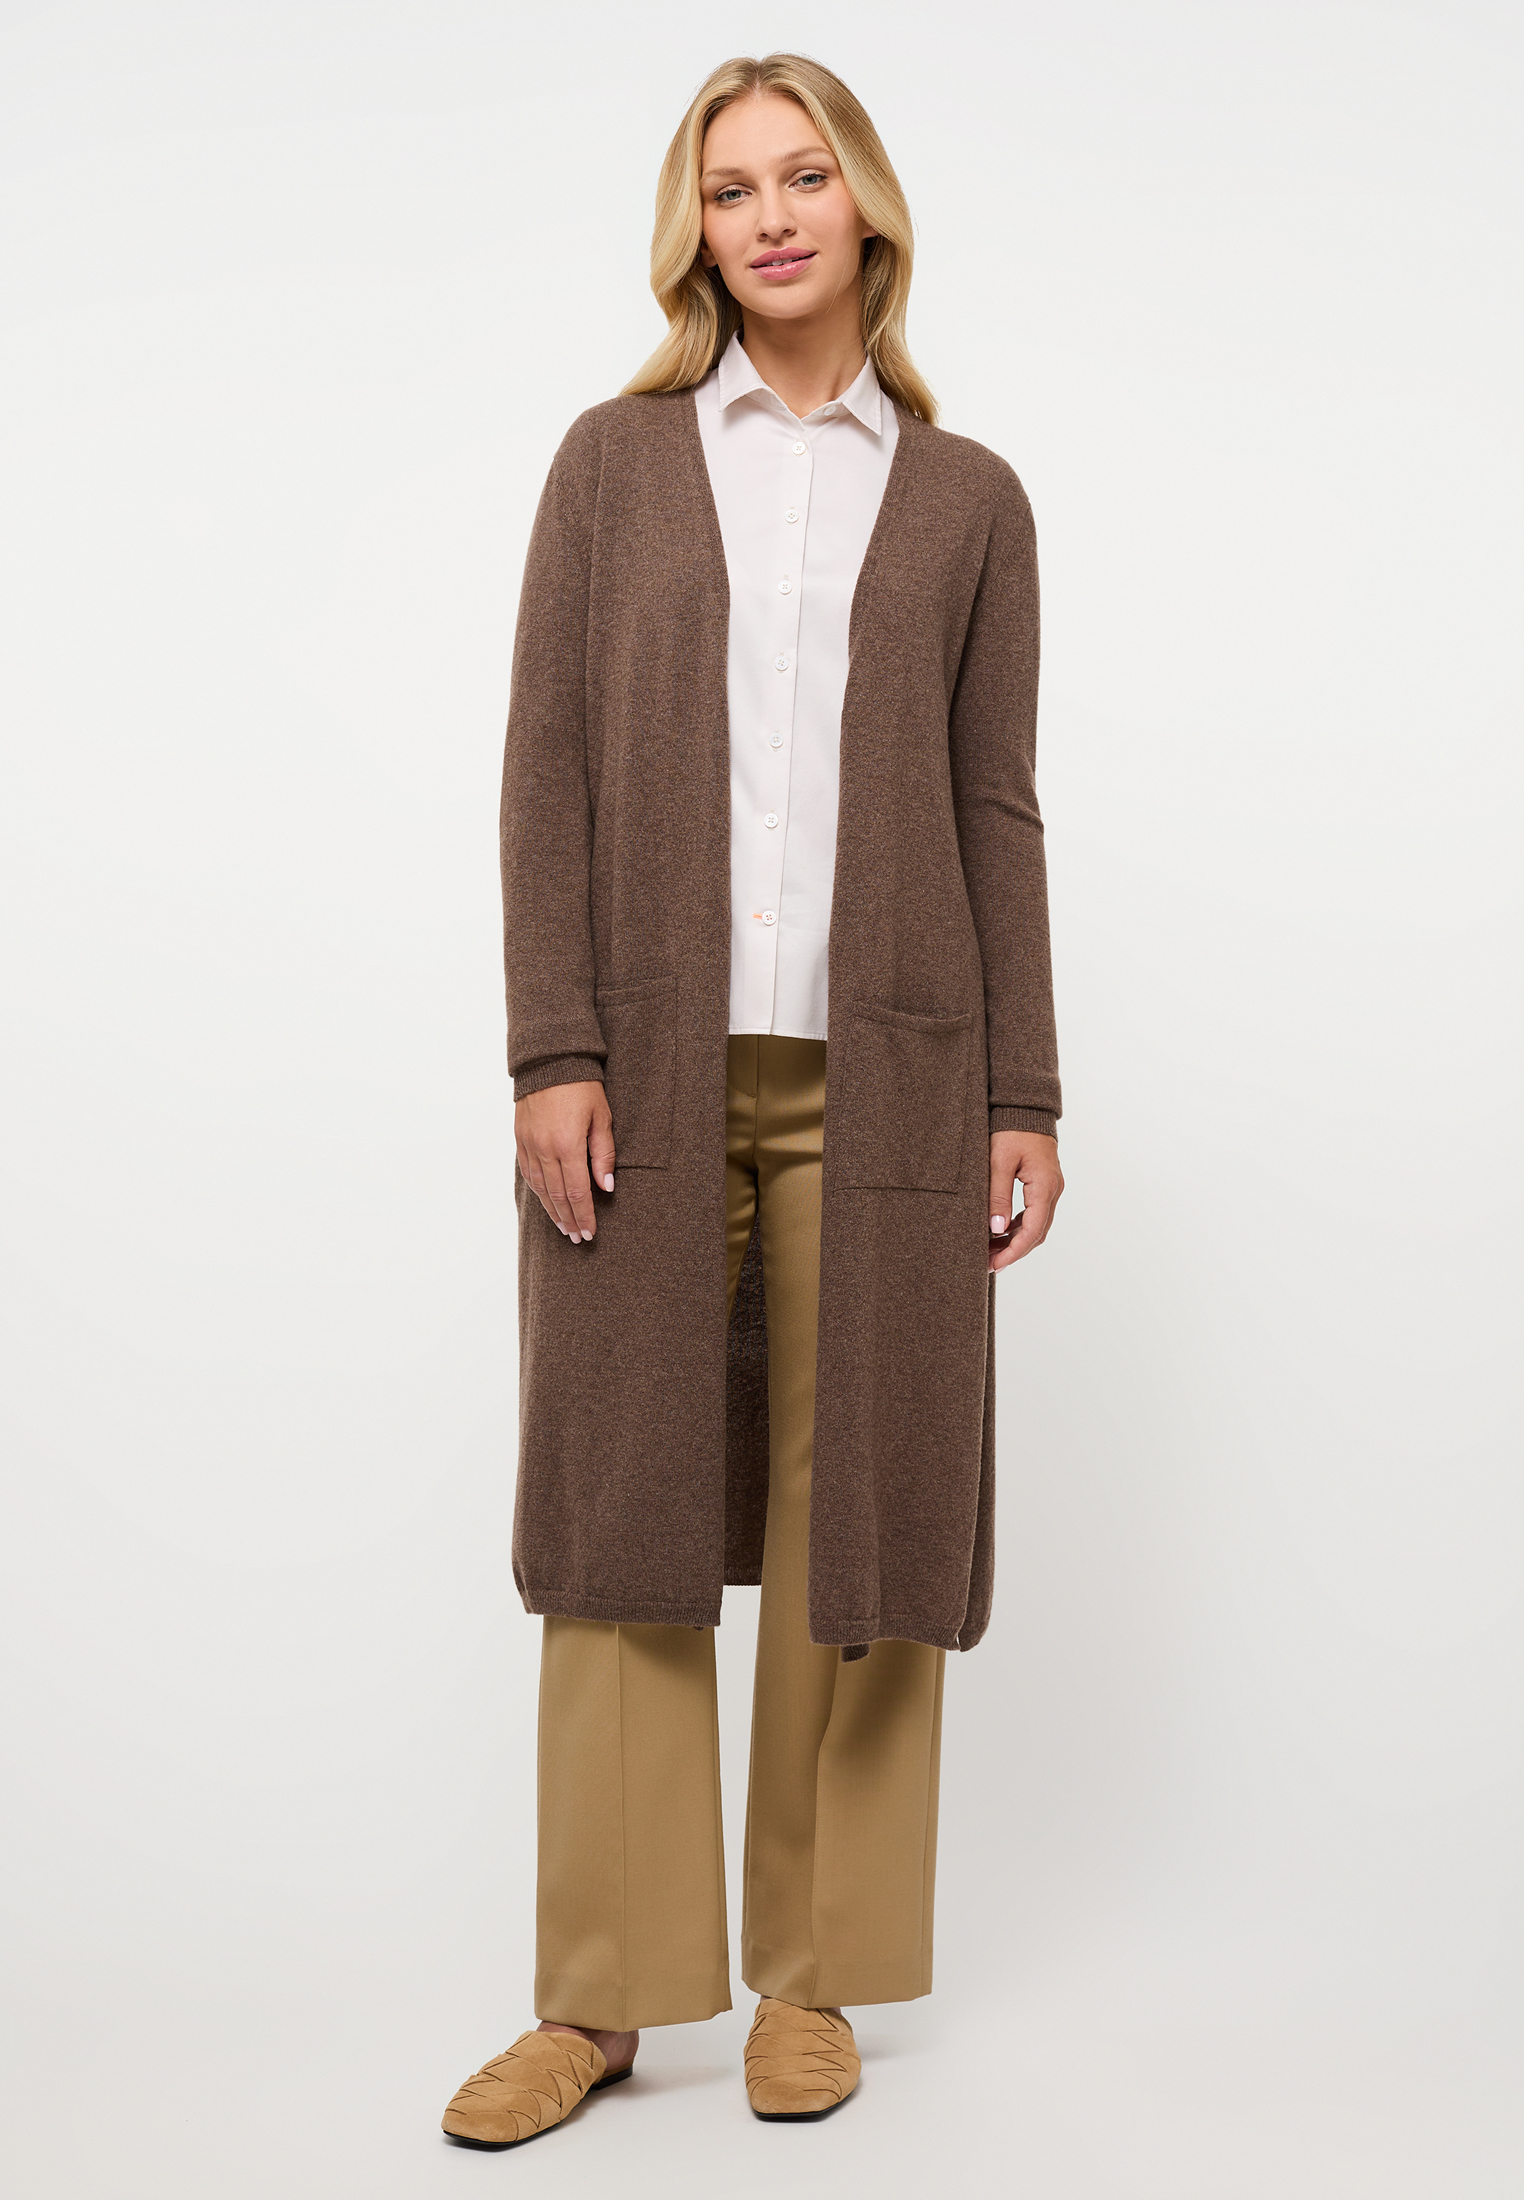 | in plain brown brown cardigan dark | dark 2XL Knitted 2KN00093-02-92-2XL |